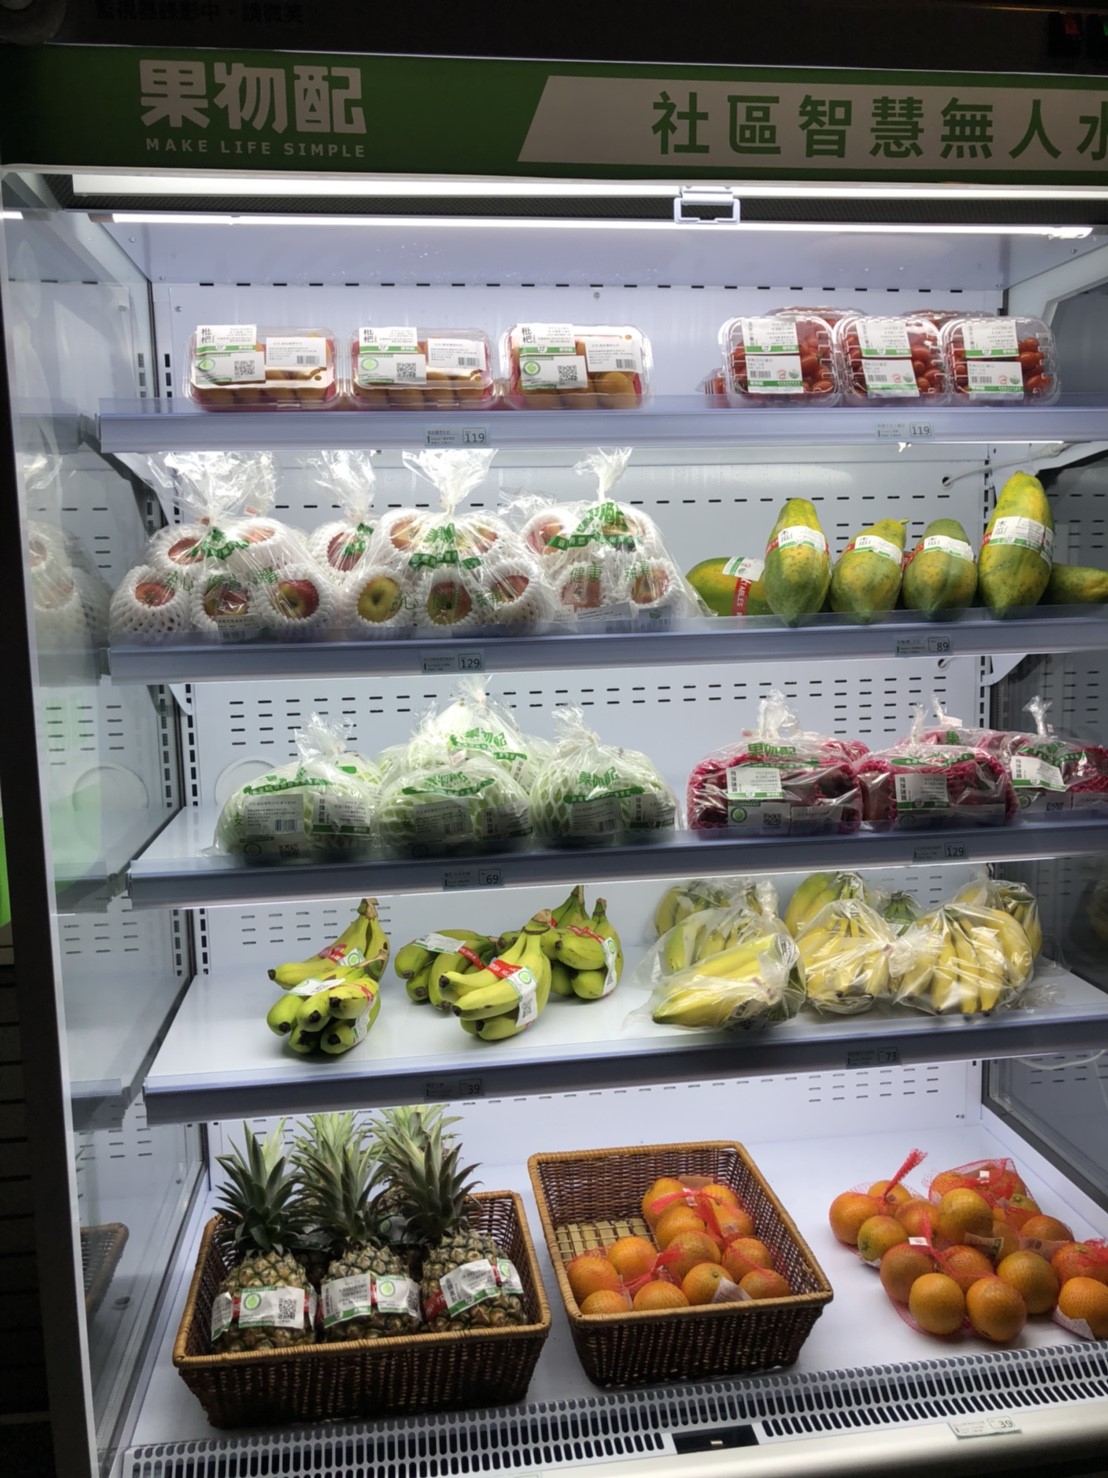 為了在線下世界增加與陌生客戶的接觸機會，果物配用自動販賣機結合物聯網技術，實現「無人水果店」擴張實體店面。   圖：果物配／提供